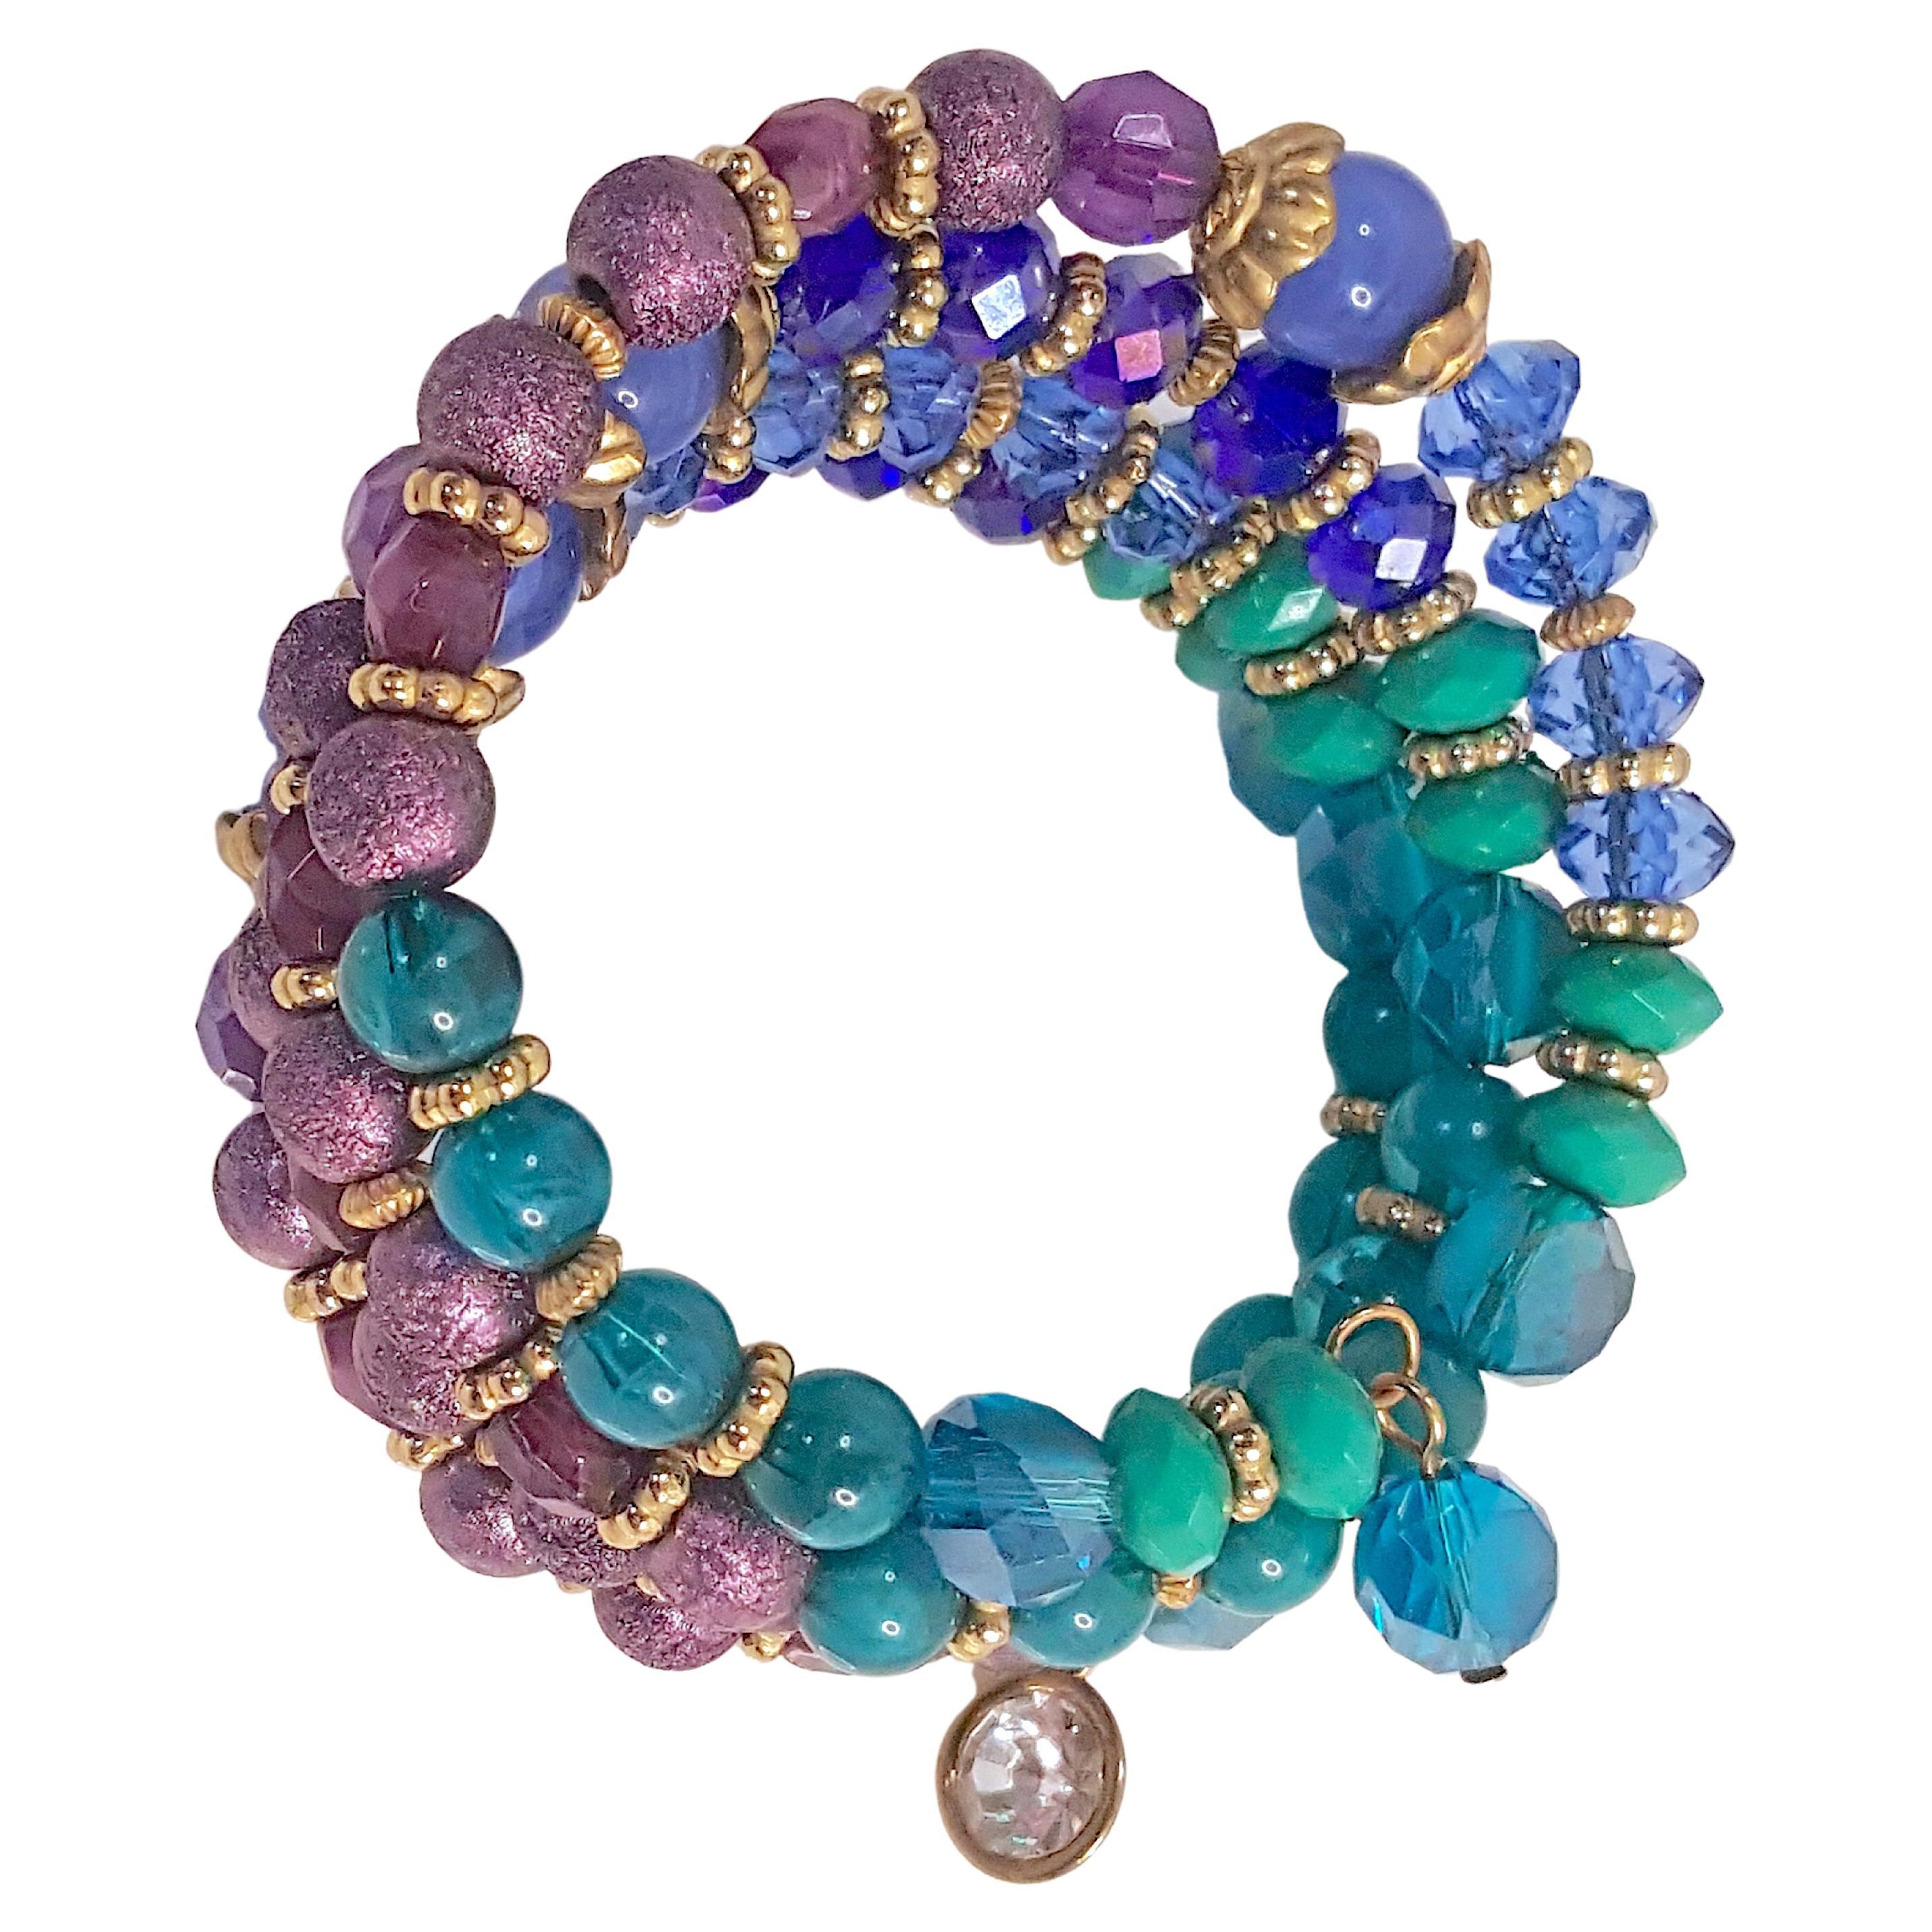 Dieses Armband aus Messingdraht von Miriam Haskell (1899-1981) mit handgefertigten pfauenfarbenen Perlen und dekorativem vergoldetem Messing wurde von ihrem ersten Designer Frank HESS entworfen. Seit der Gründung des Unternehmens in New York City im